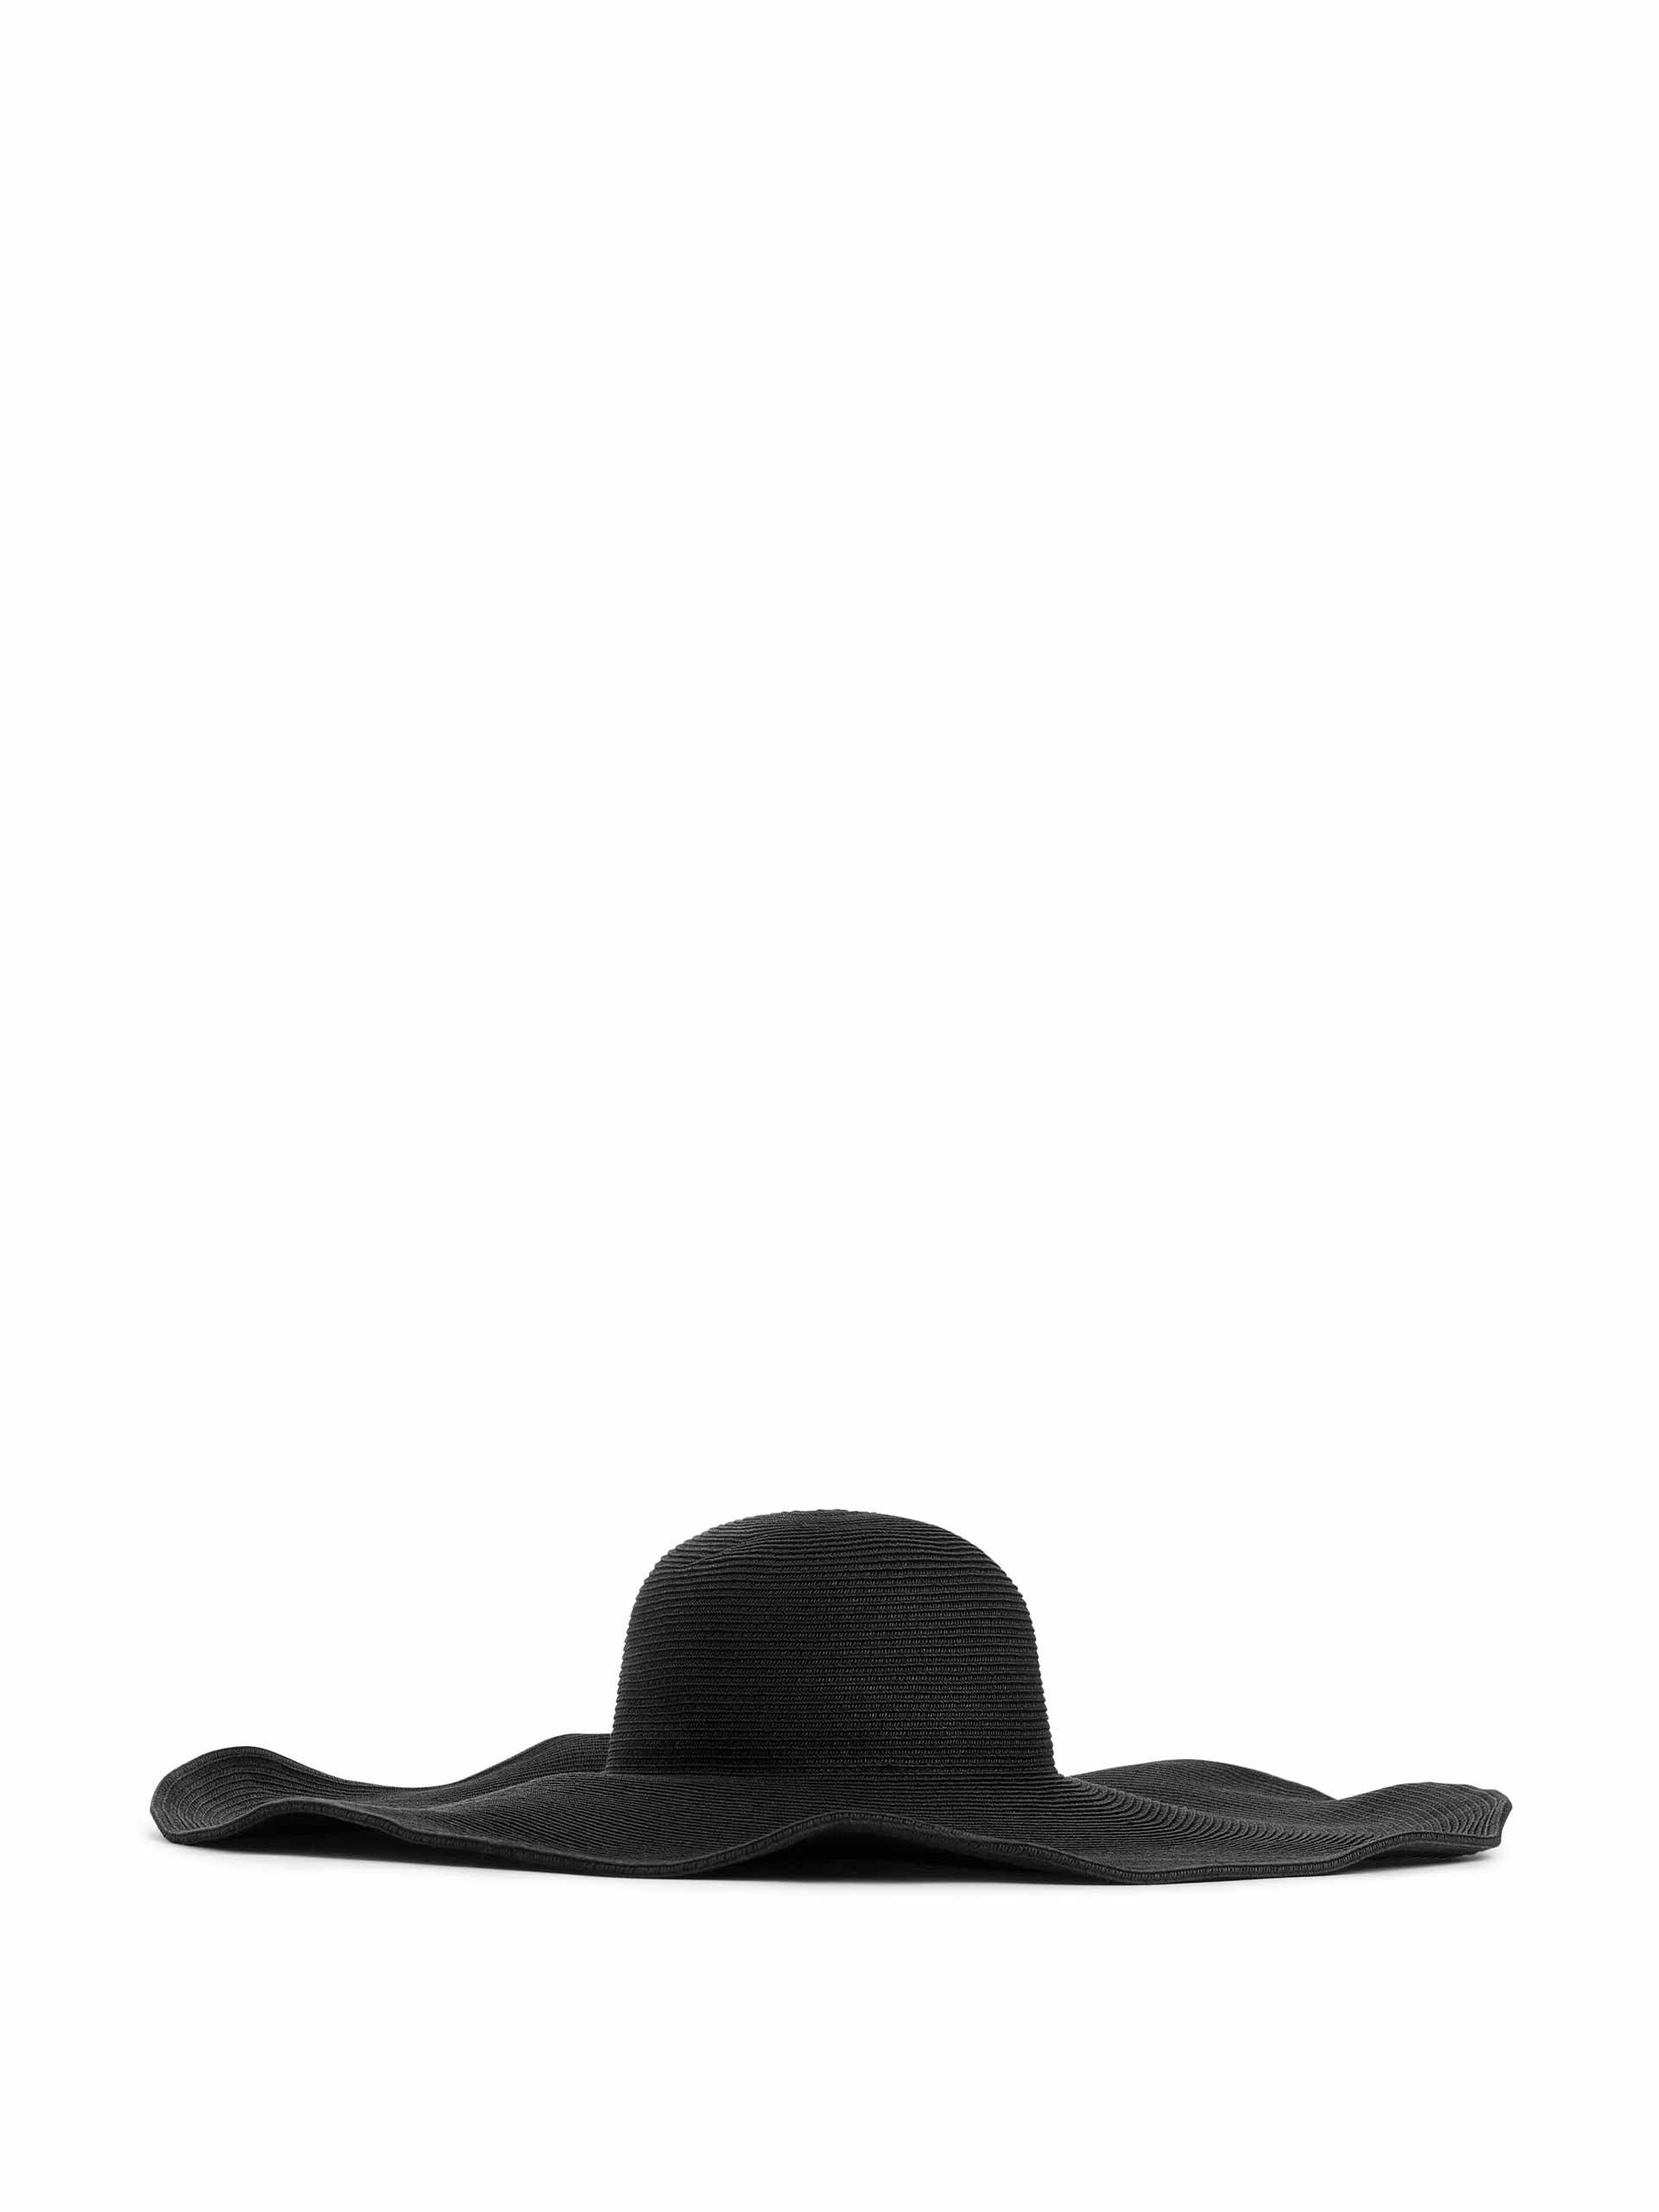 Black wide straw hat